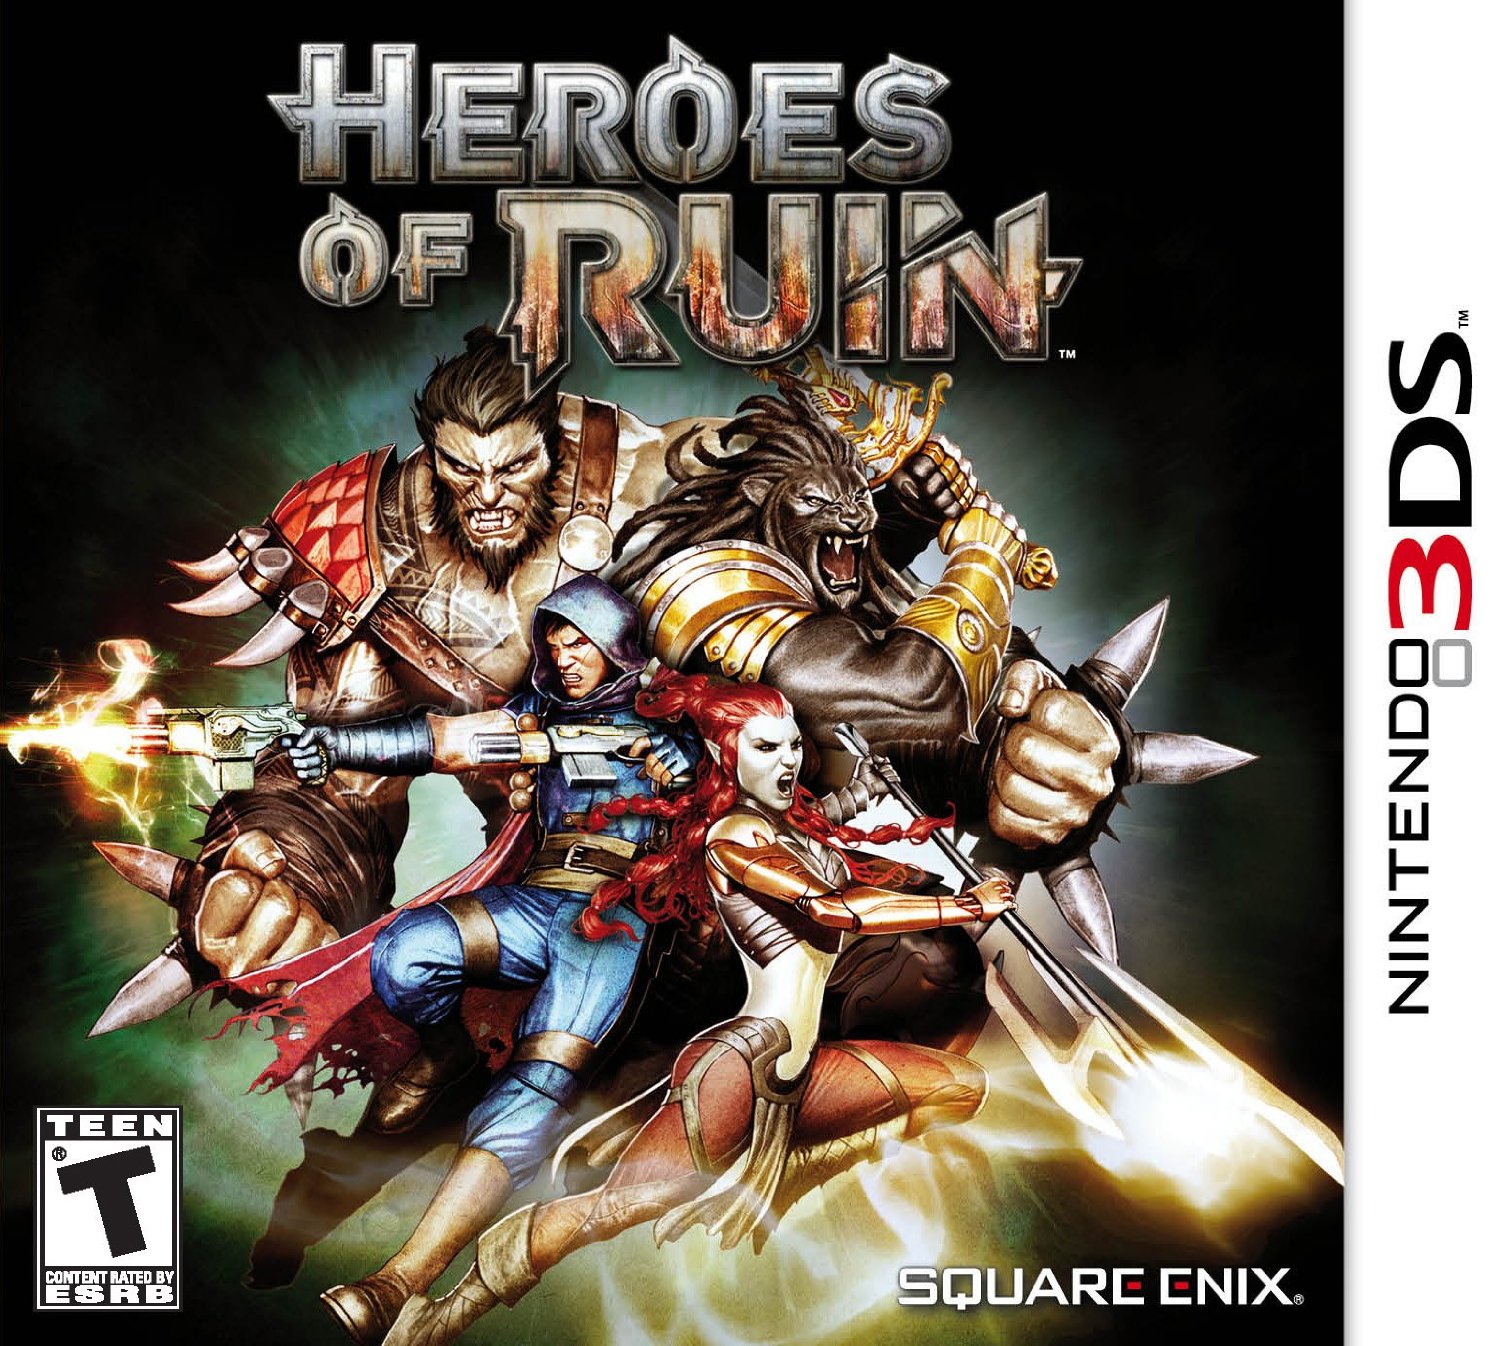 Heroes_Boxart_3DS.jpg